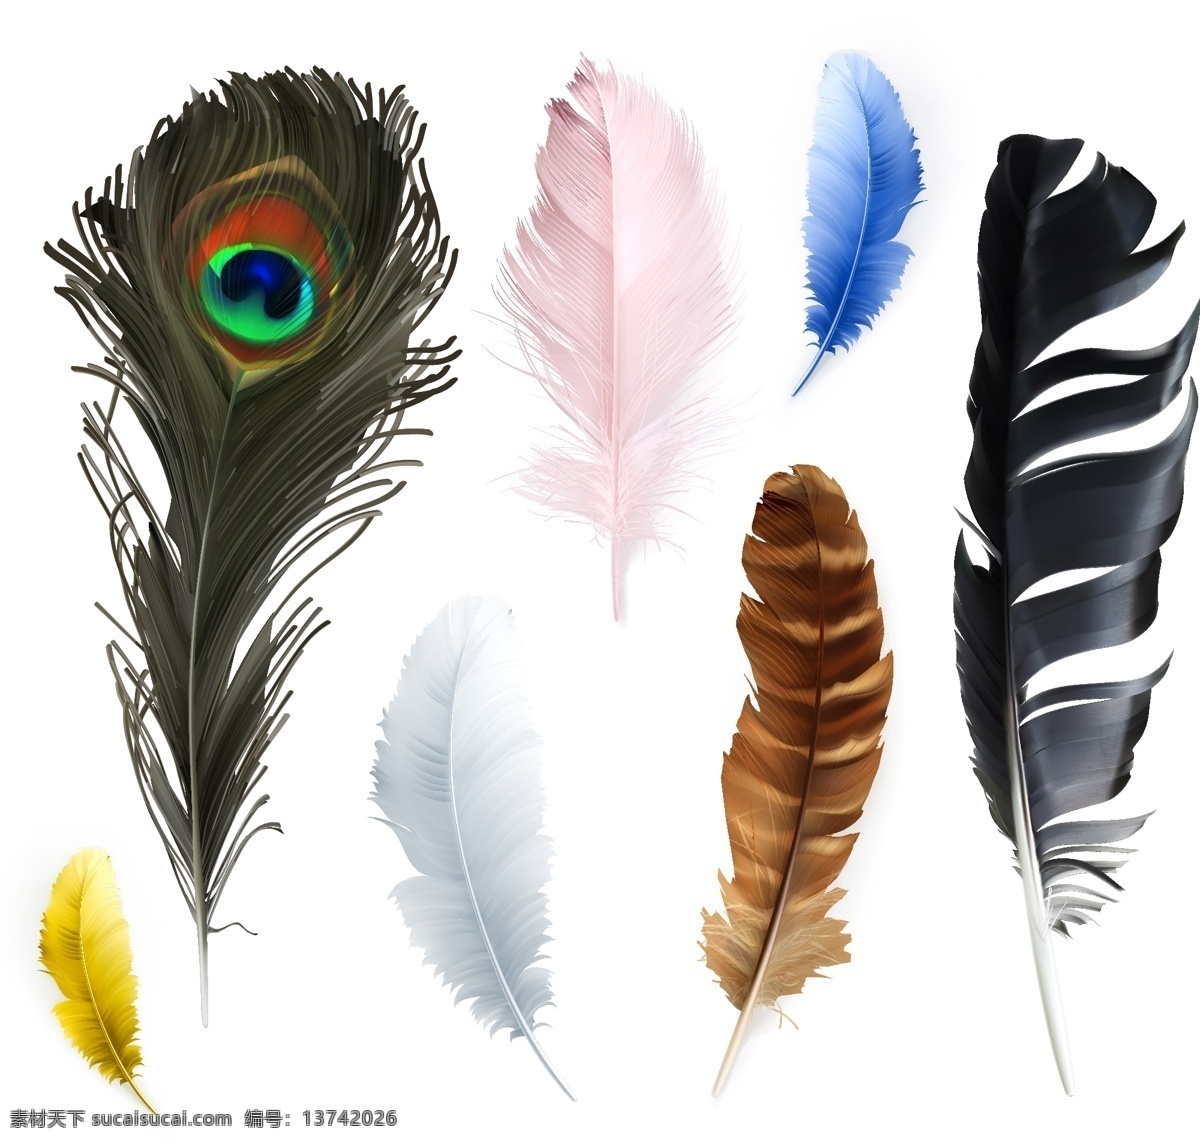 鸟类 羽毛 矢量 鸟类羽毛 羽毛背景 彩色羽毛 创意背景 时尚背景 抽象背景 高清图片